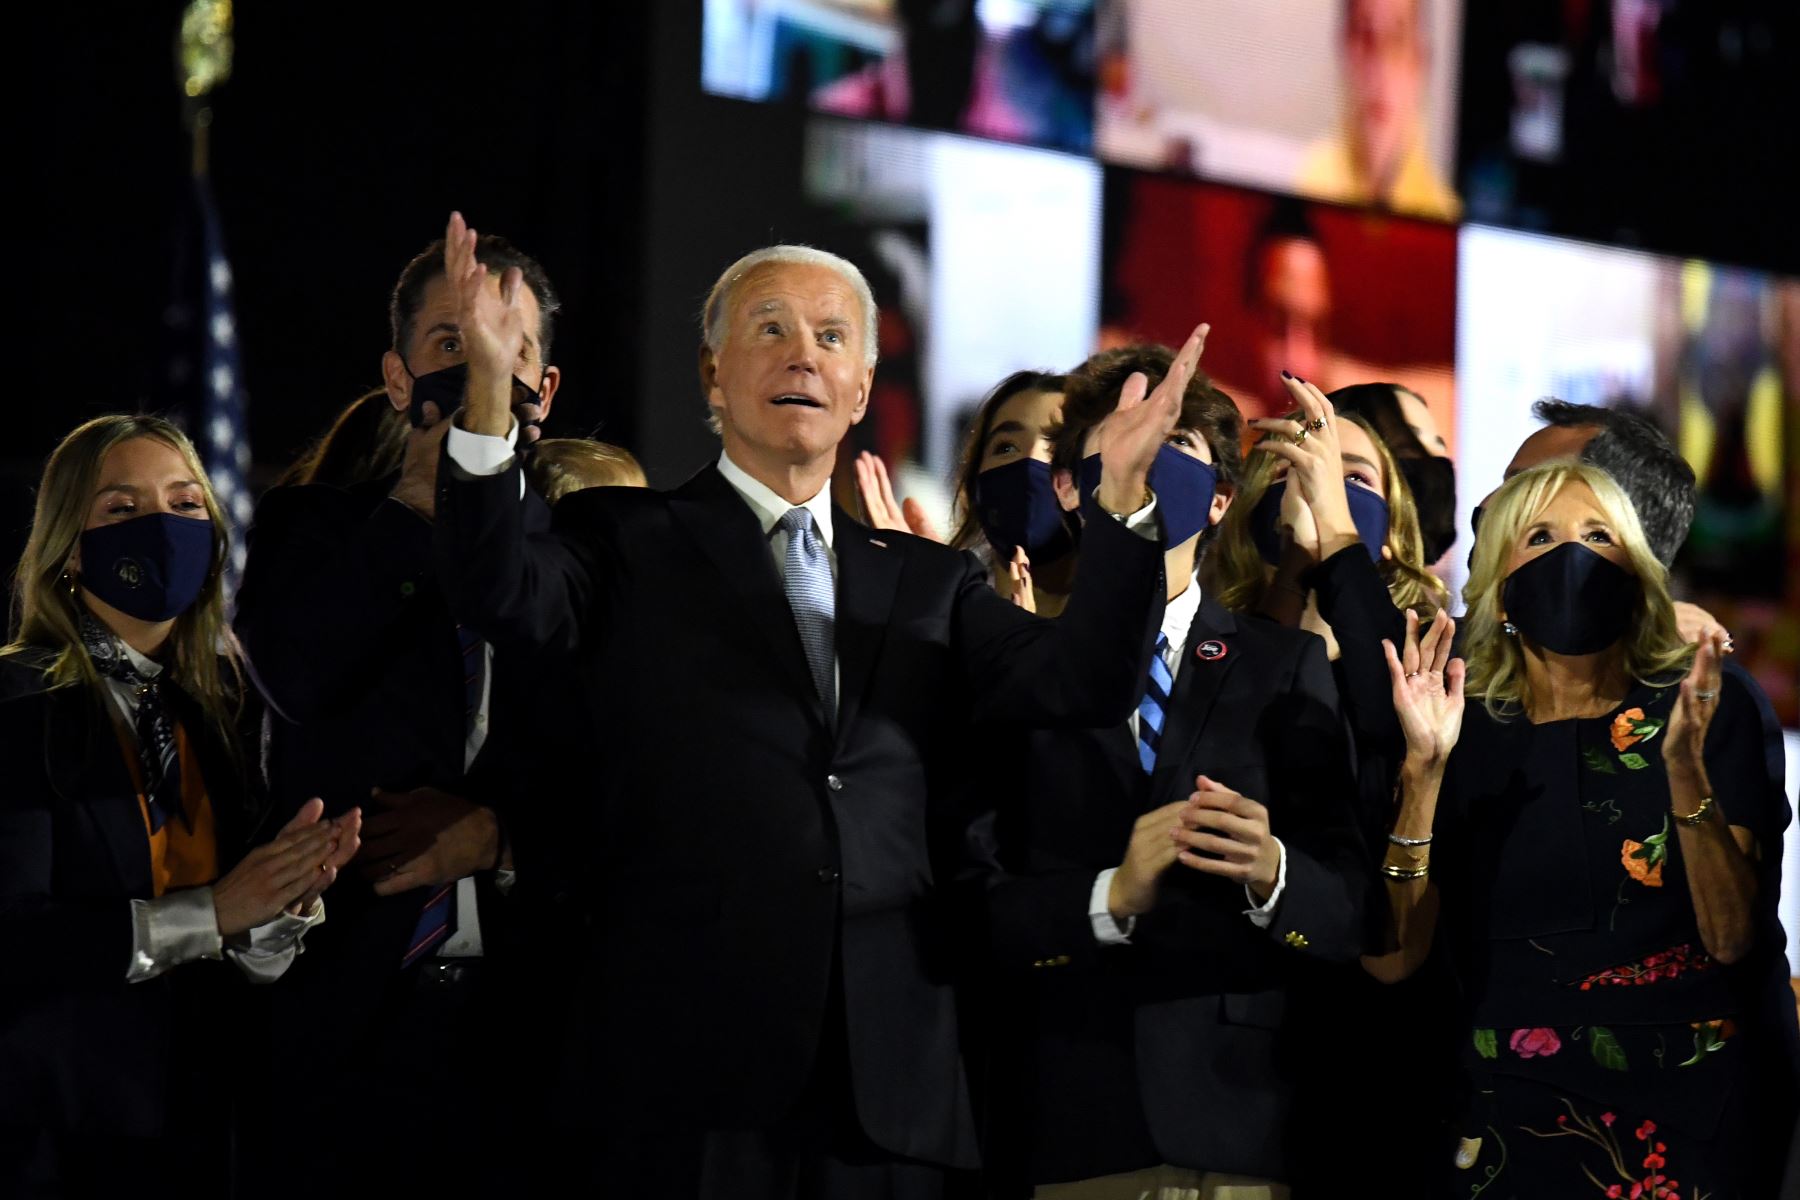 El presidente electo de EE. UU., Joe Biden, con su esposa Jill Biden, junto con miembros de la familia, saludan a la multitud en el escenario después de pronunciar sus comentarios en Wilmington, Delaware,  y ser declarados ganadores de las elecciones presidenciales de EE. UU.
Foto: AFP